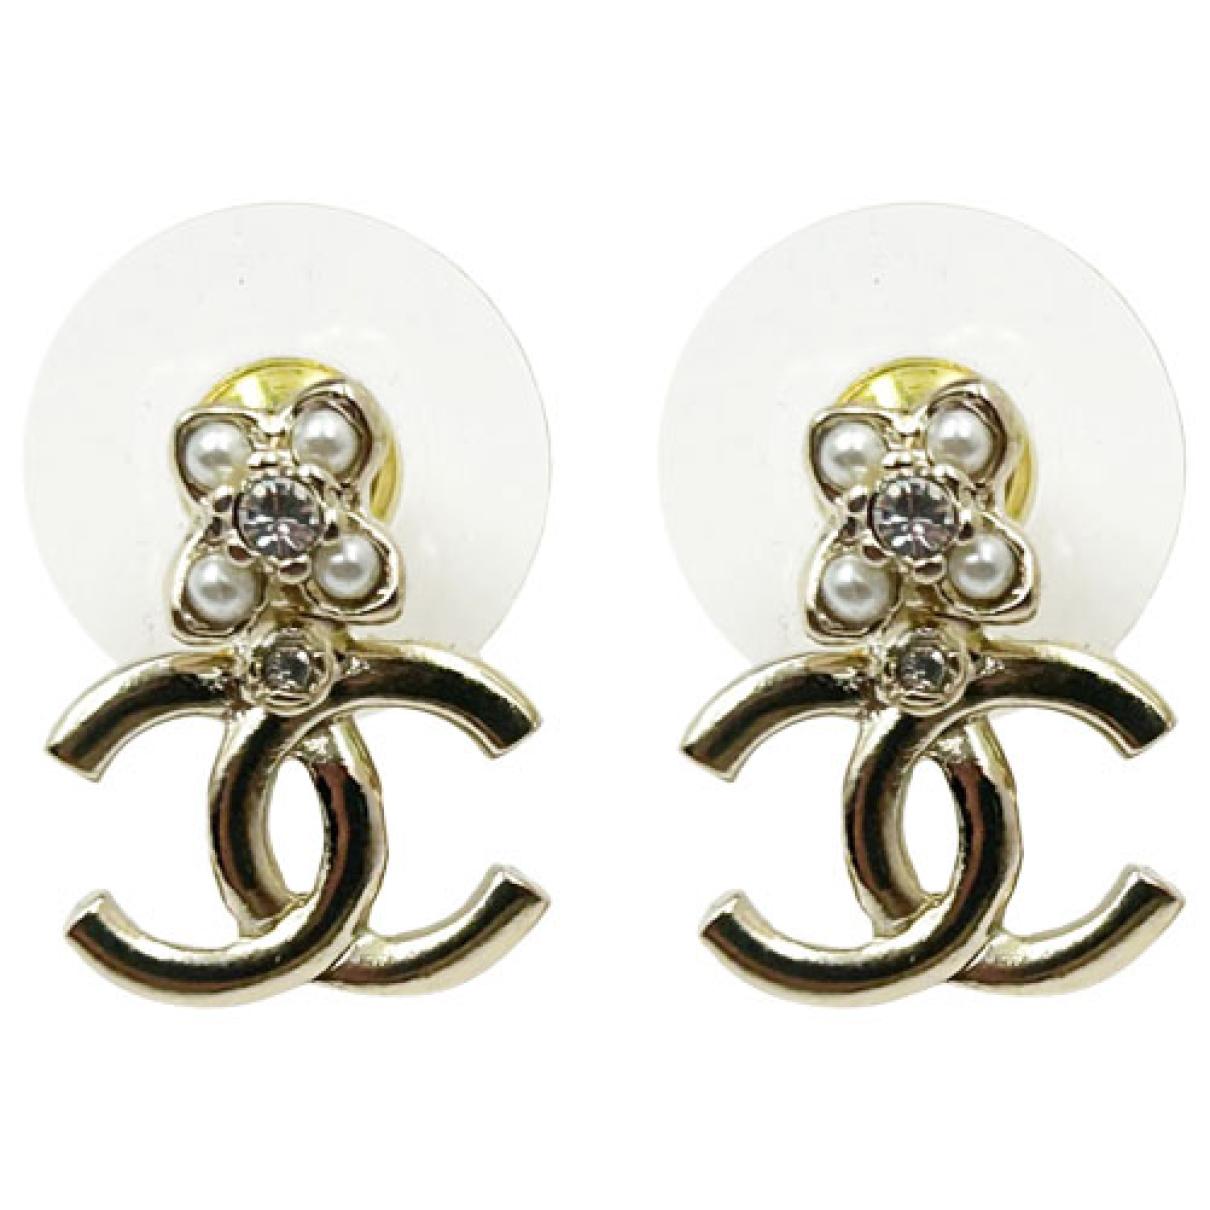 Louise earrings Louis Vuitton Silver in Metal - 34479684